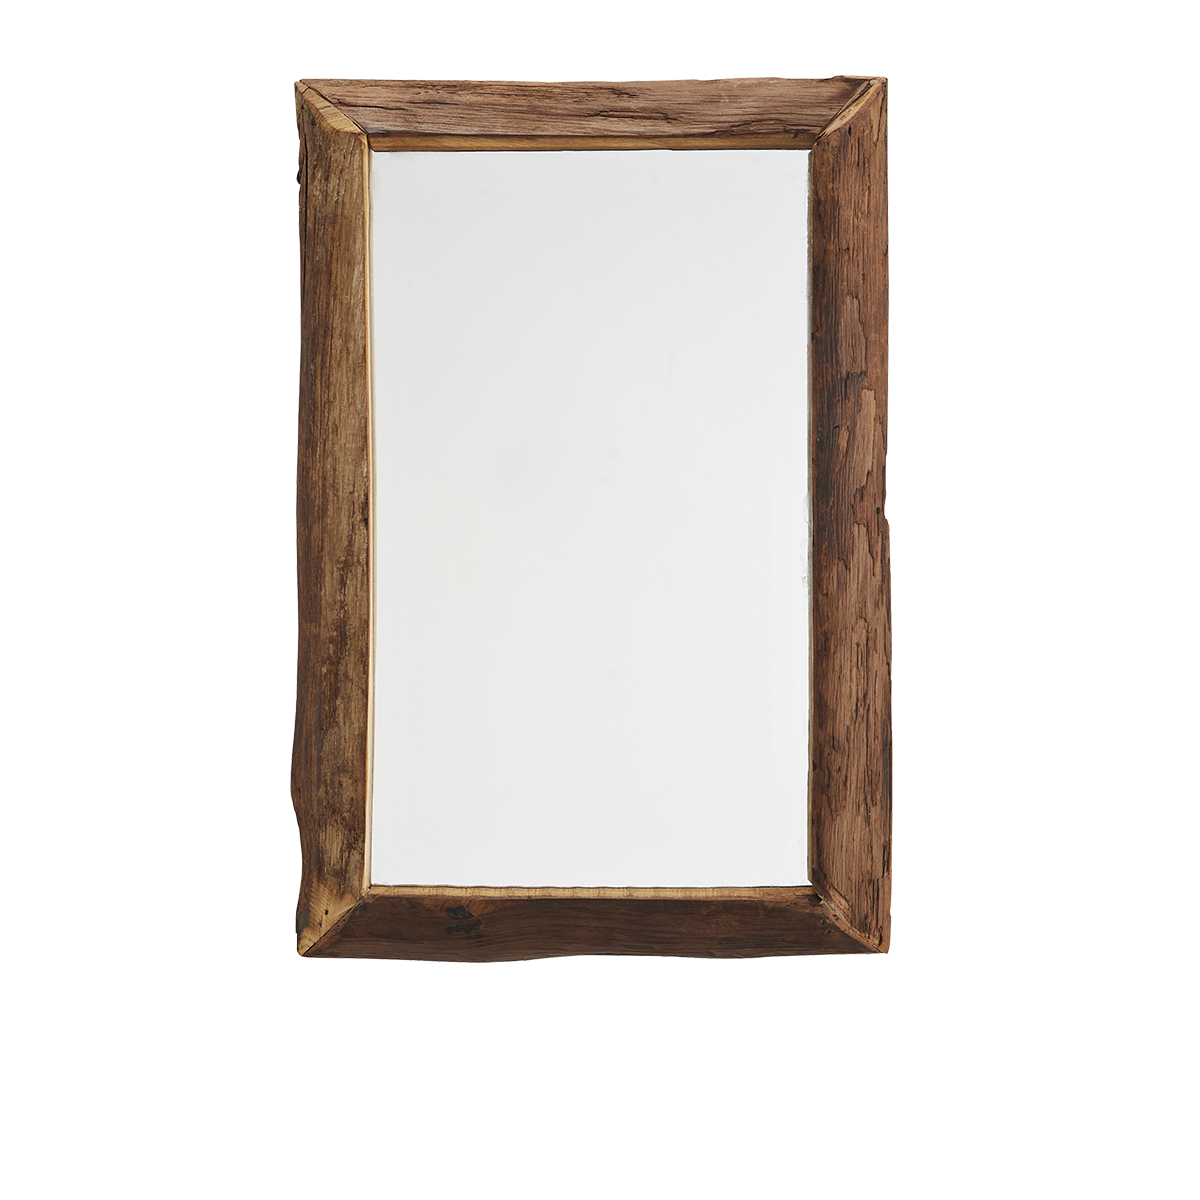 Mirror w/ wooden frame